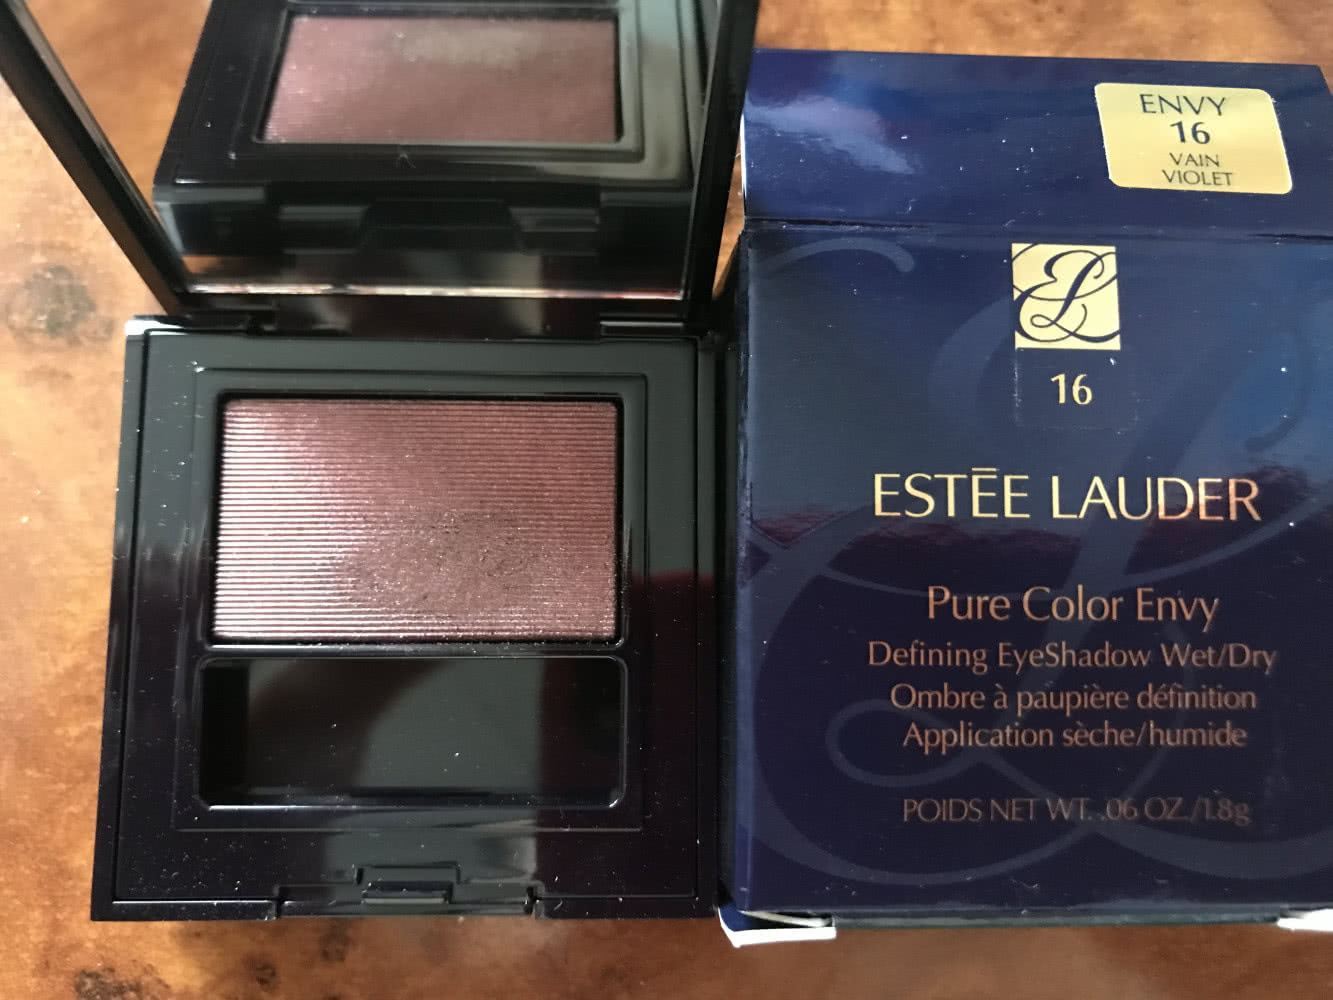 Estée Lauder//Pure Color Envy//16 vain violet